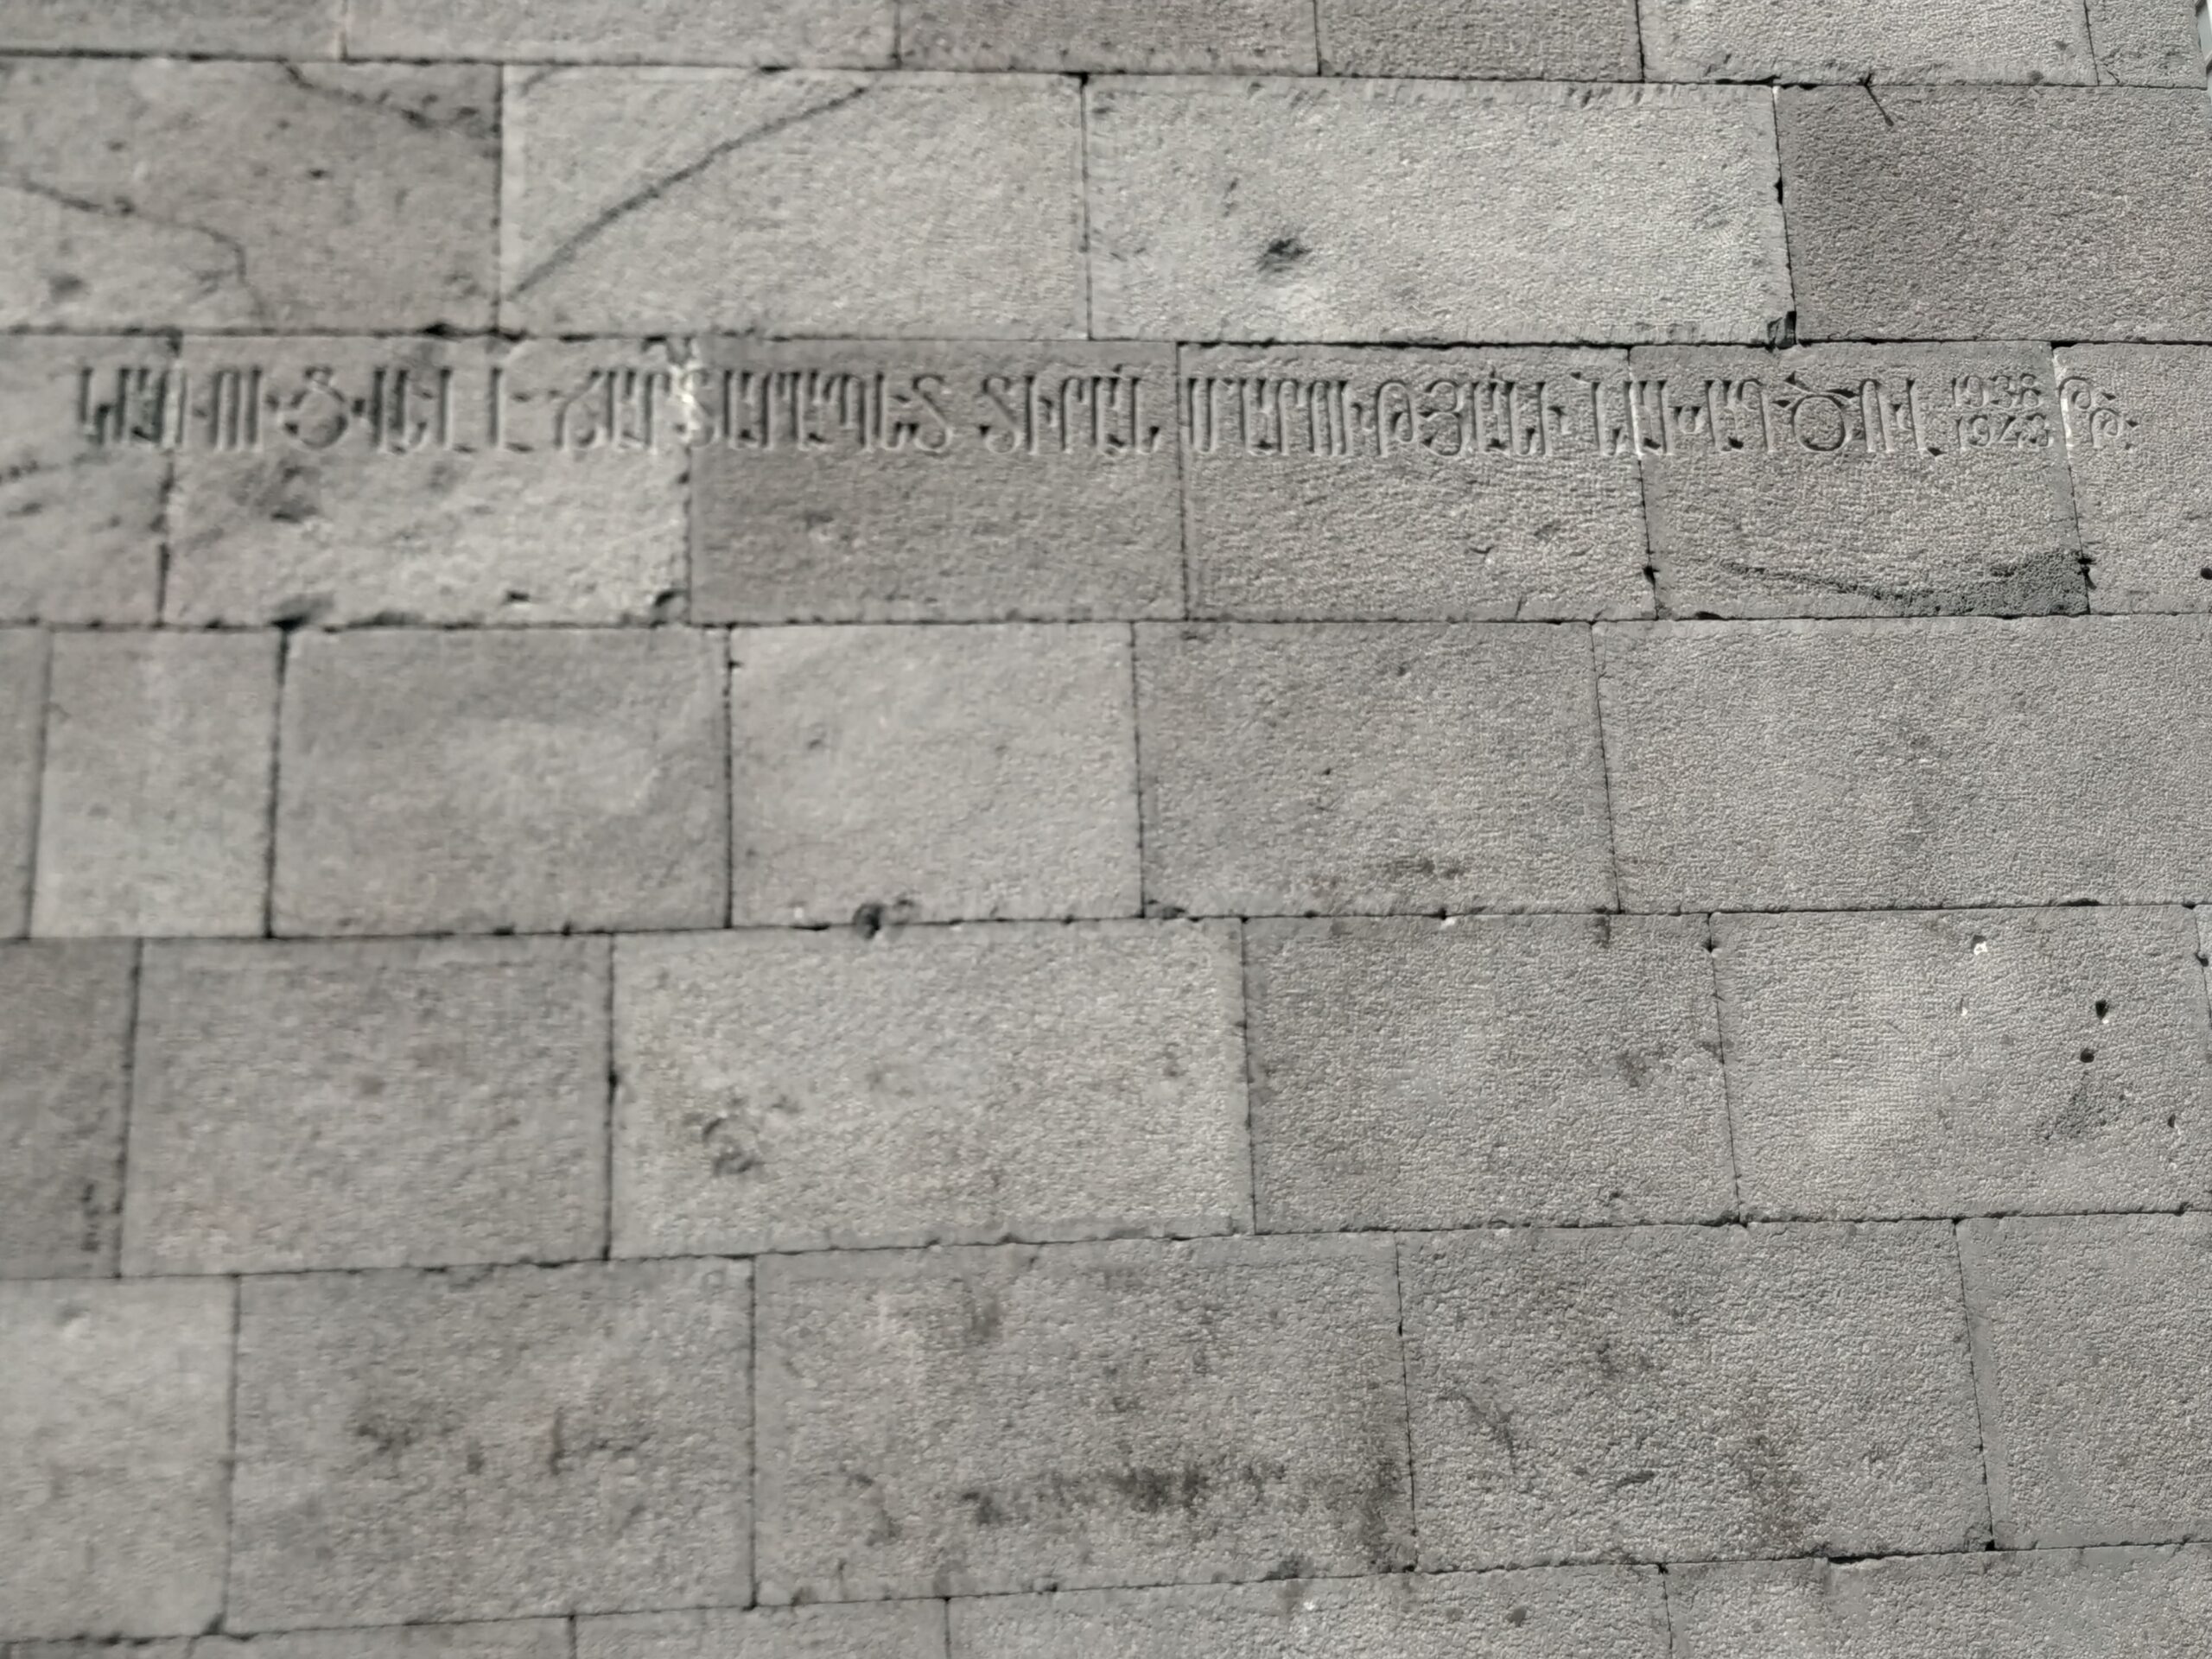 Գլխավոր ճակատի վրա փորագրված արձանագրությունը առ այն, որ շենքը կառուցվել է Տիրան Մարությանի նախագծով